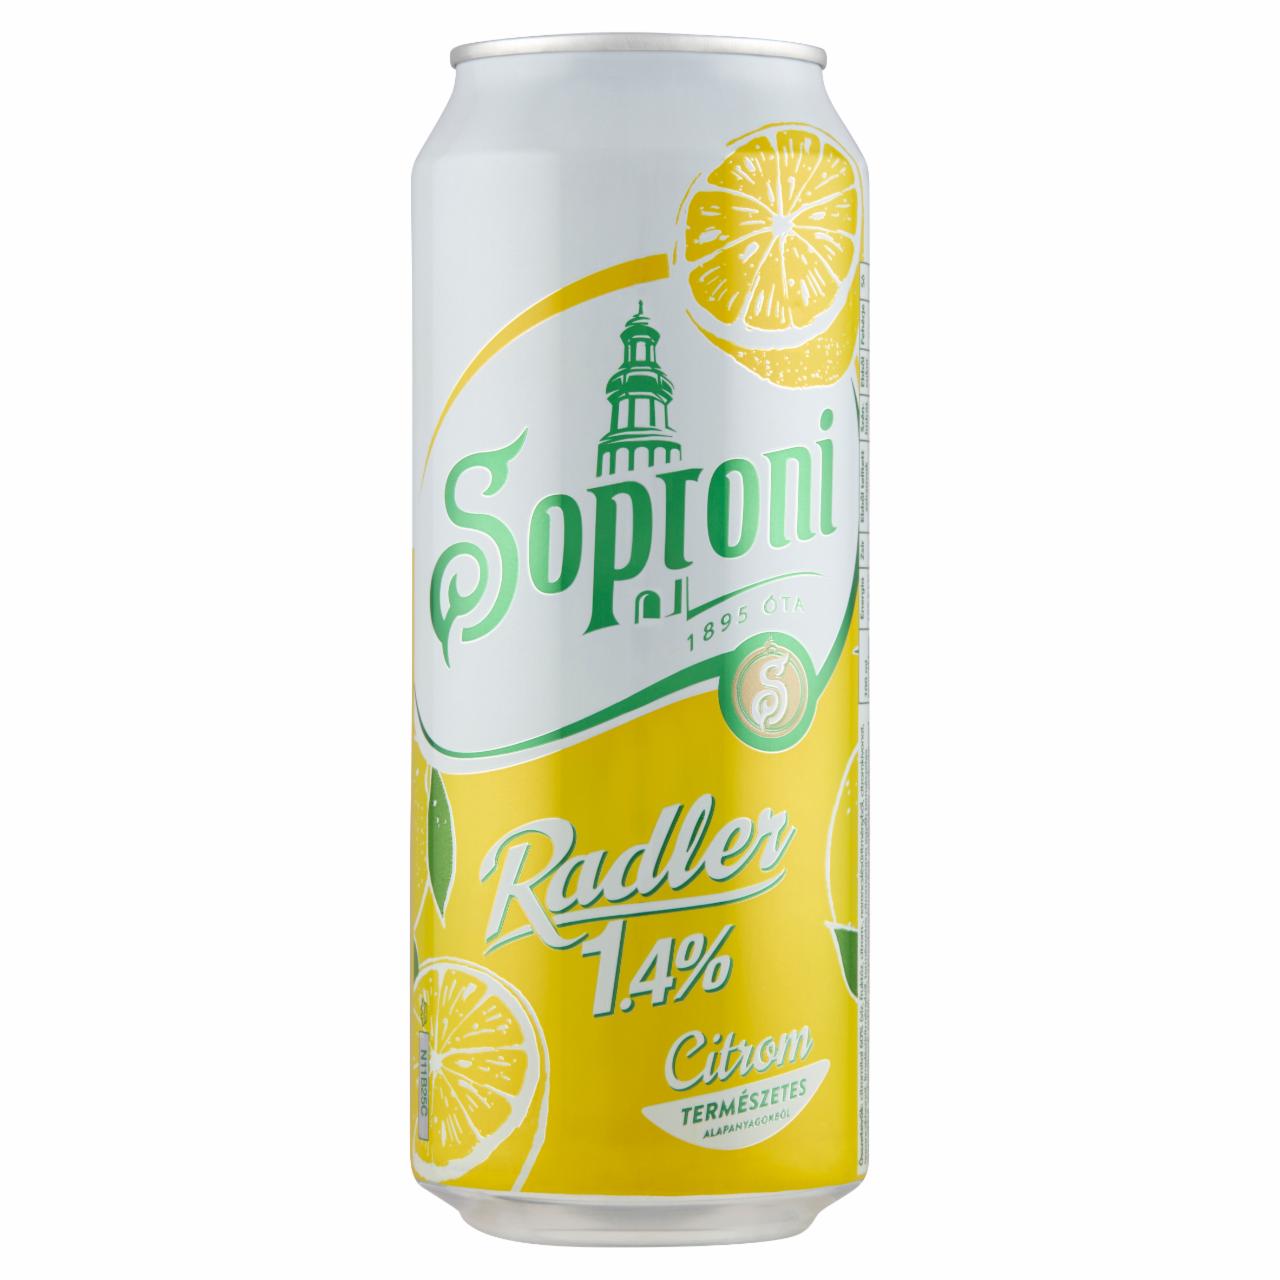 Képek - Soproni Radler citromos sörital 1,4% 0,5 l doboz